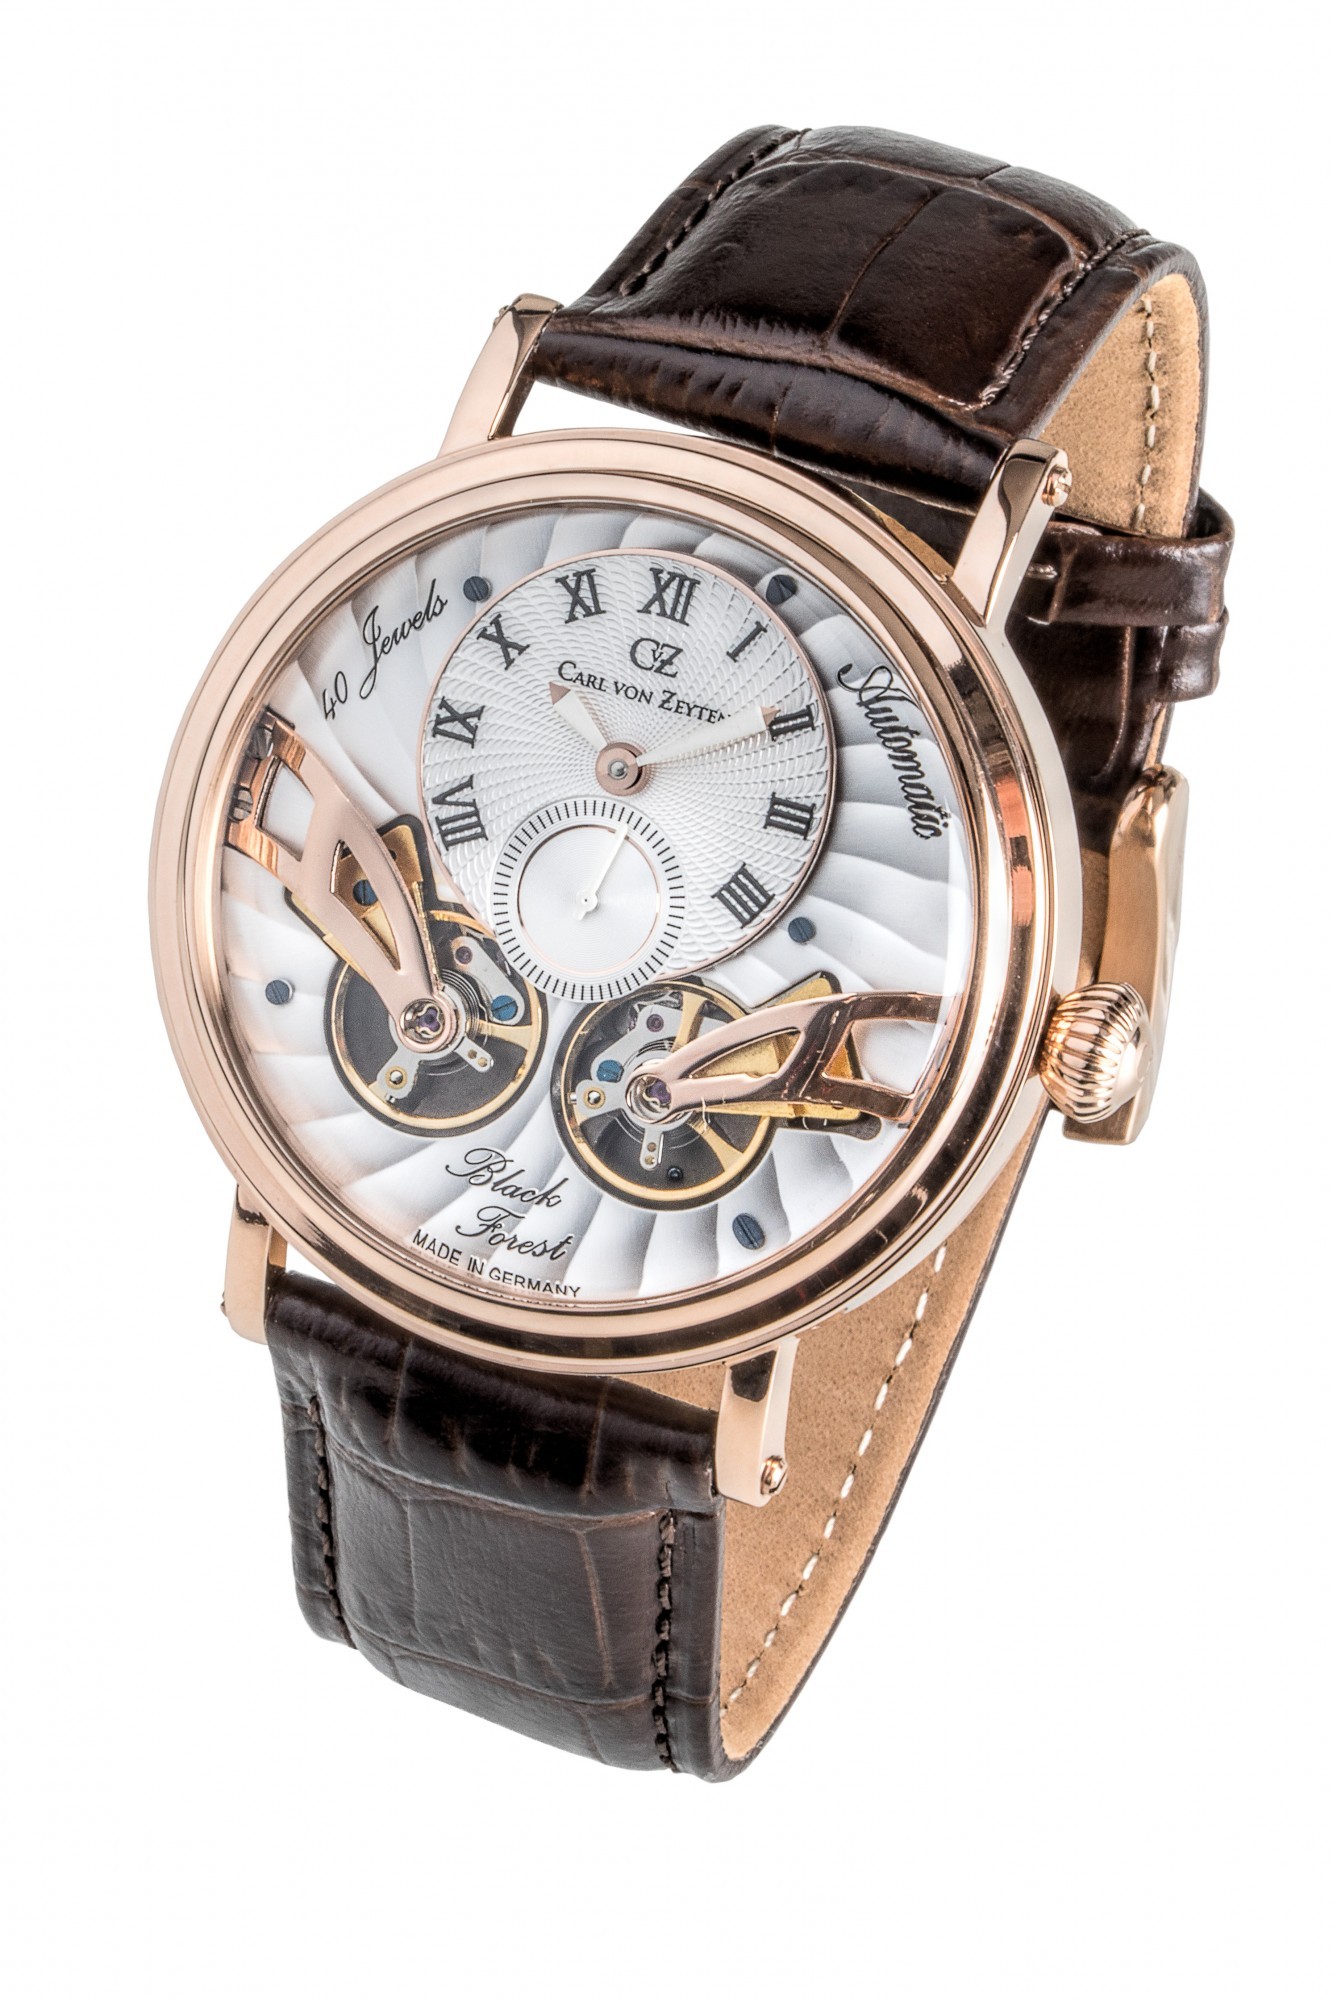 Наручные часы золотистые Carl von Zeyten в Rozetka™ - широкий выбор,  доступные цены, доставка по Украине | Купить наручные часы онлайн